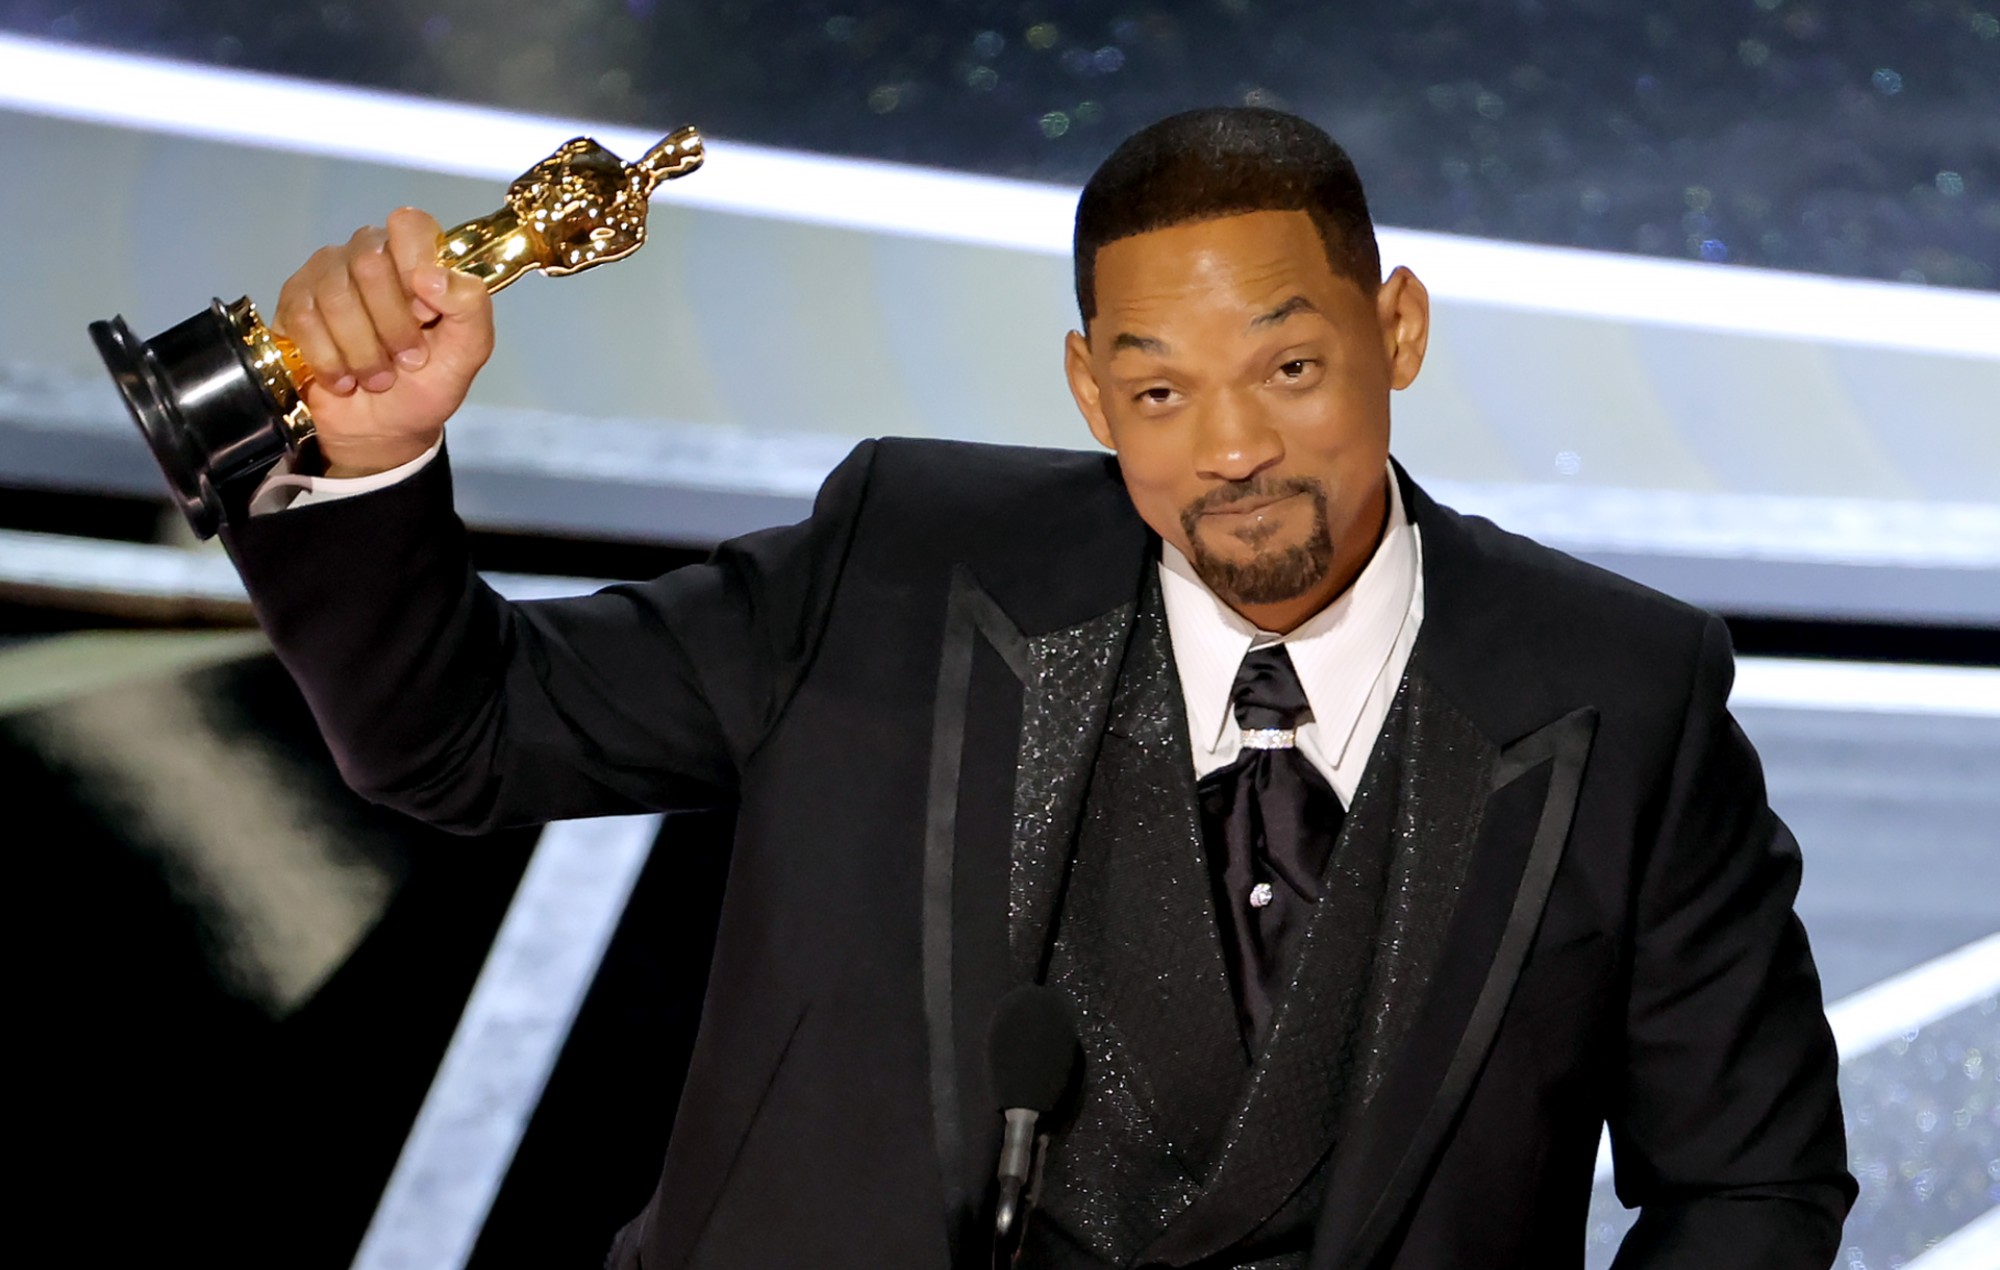 Will Smith sufrió una caída de popularidad "muy importante" tras el bofetón de los Oscars